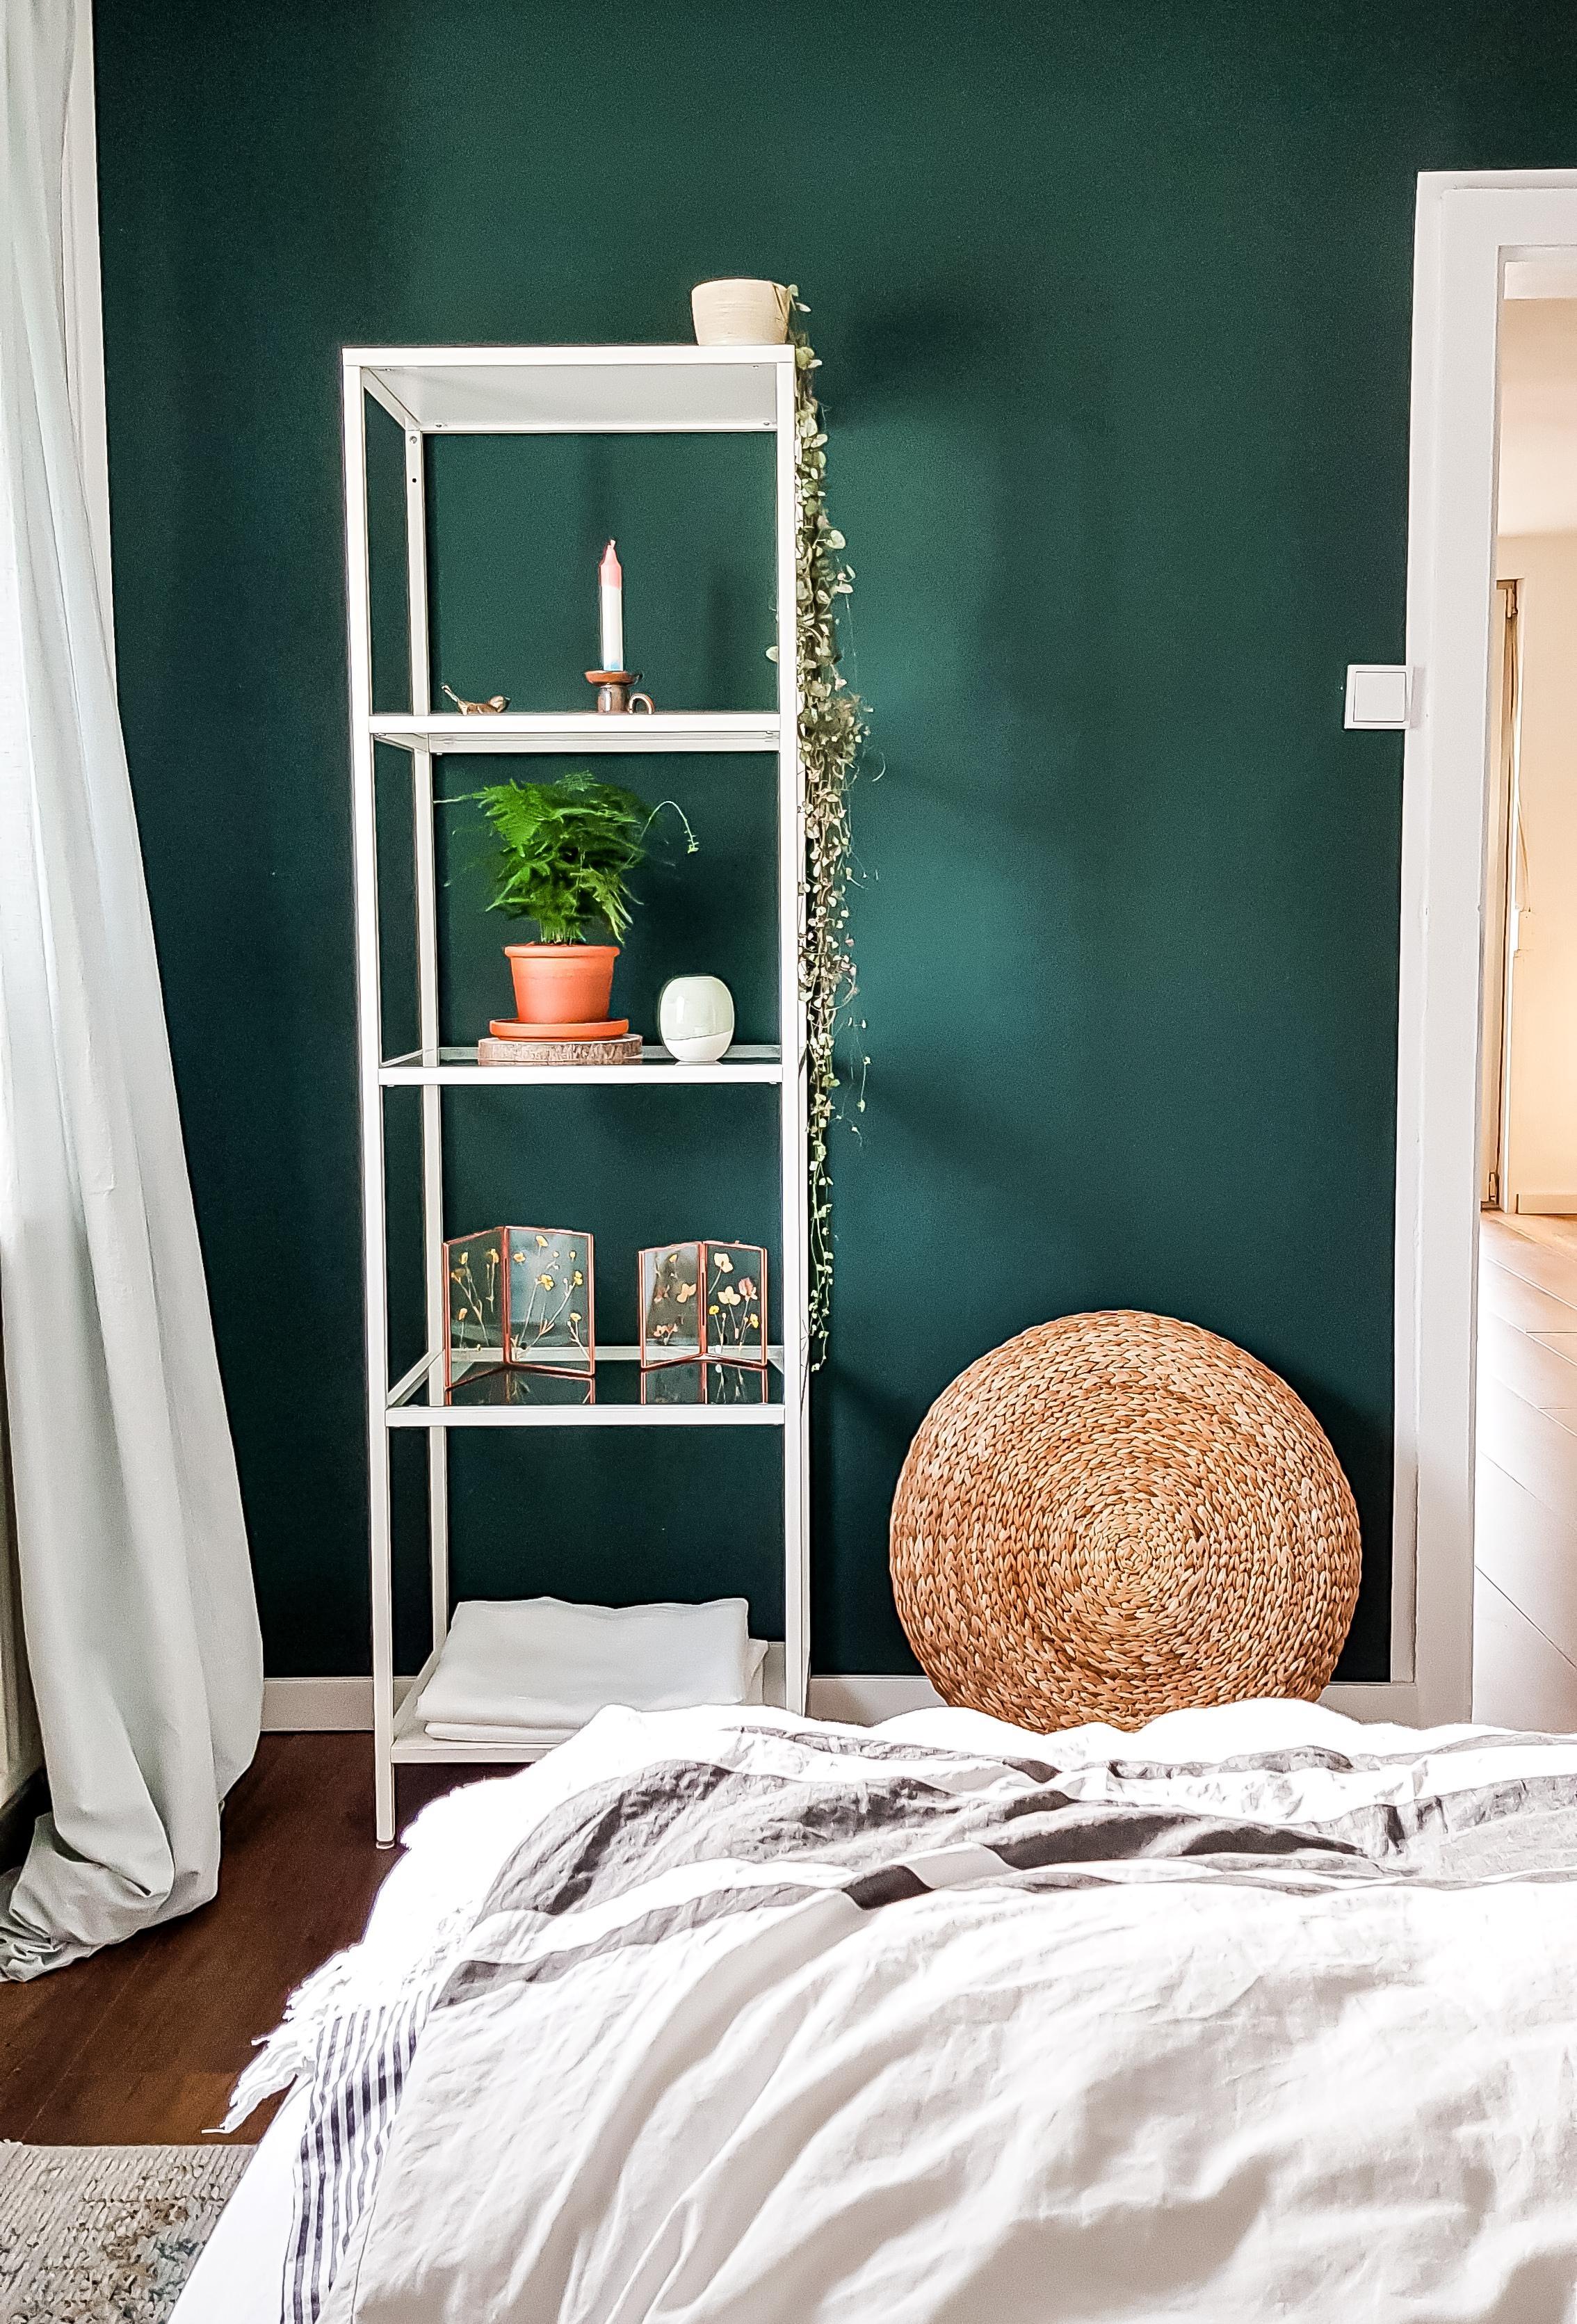 Meine Lieblingswand ist #Grün. #natürlichleben #pflanzenliebe #boho #nordic #schlafzimmer 